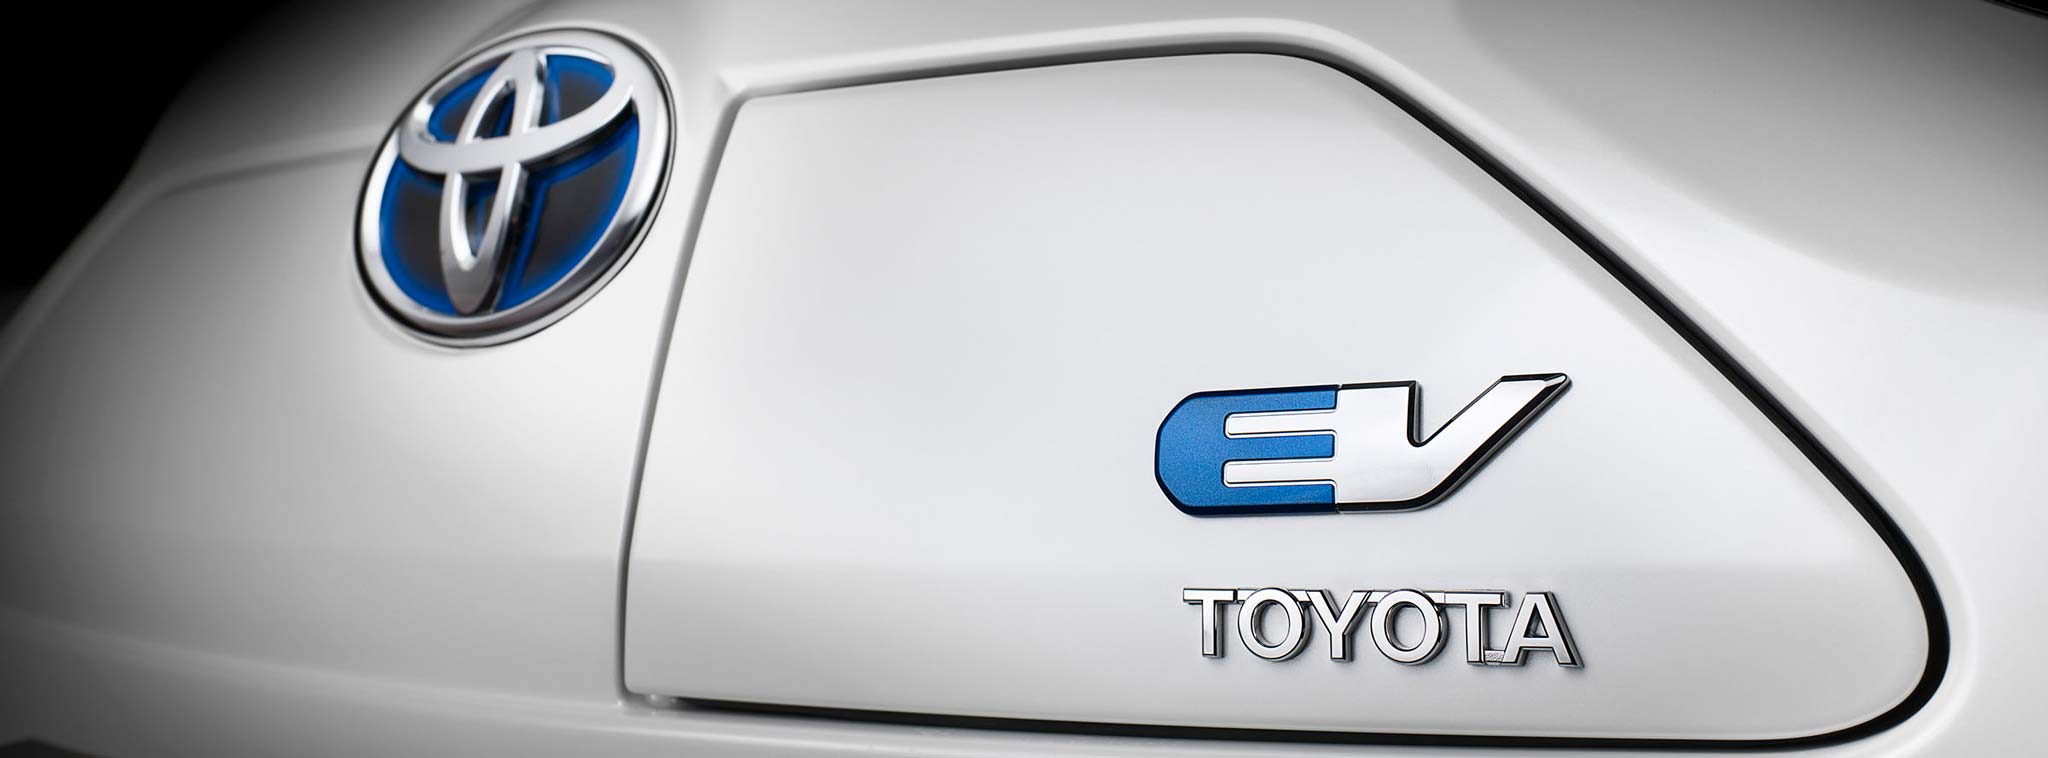 Toyota lên kế hoạch bán 10 mẫu xe hơi chạy điện vào đầu những năm 2020